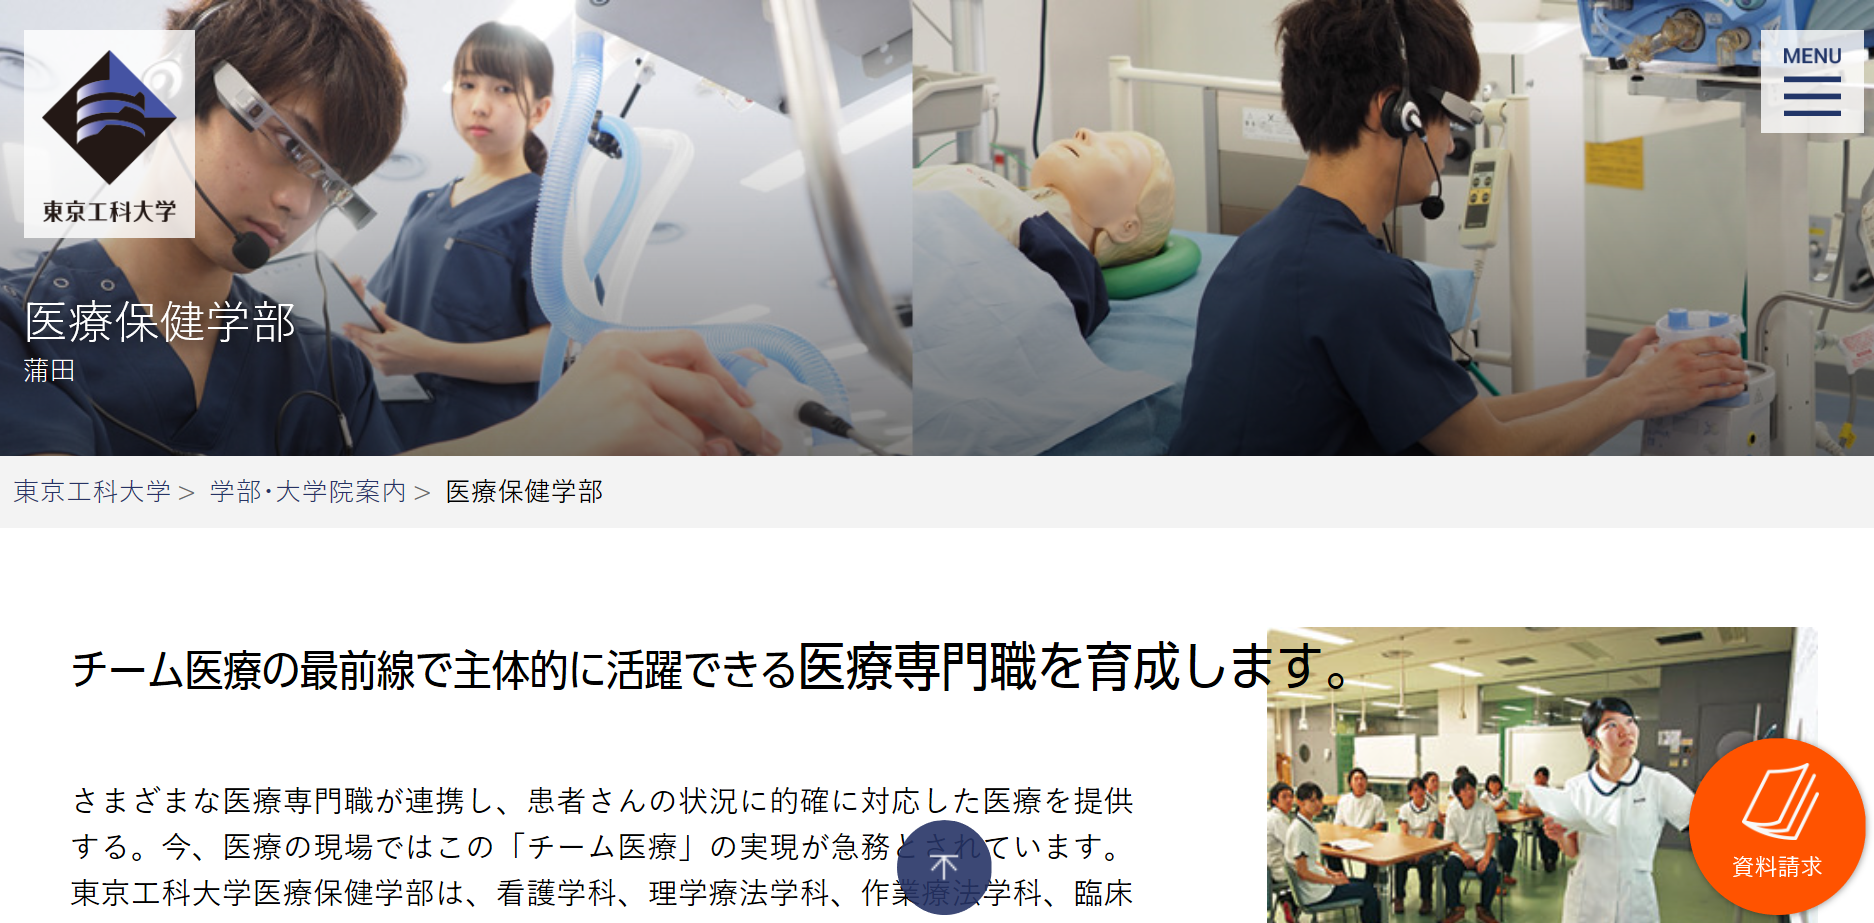 先輩が教える 東京工科大学 医療保健学部の評判とは 口コミレポート公開中